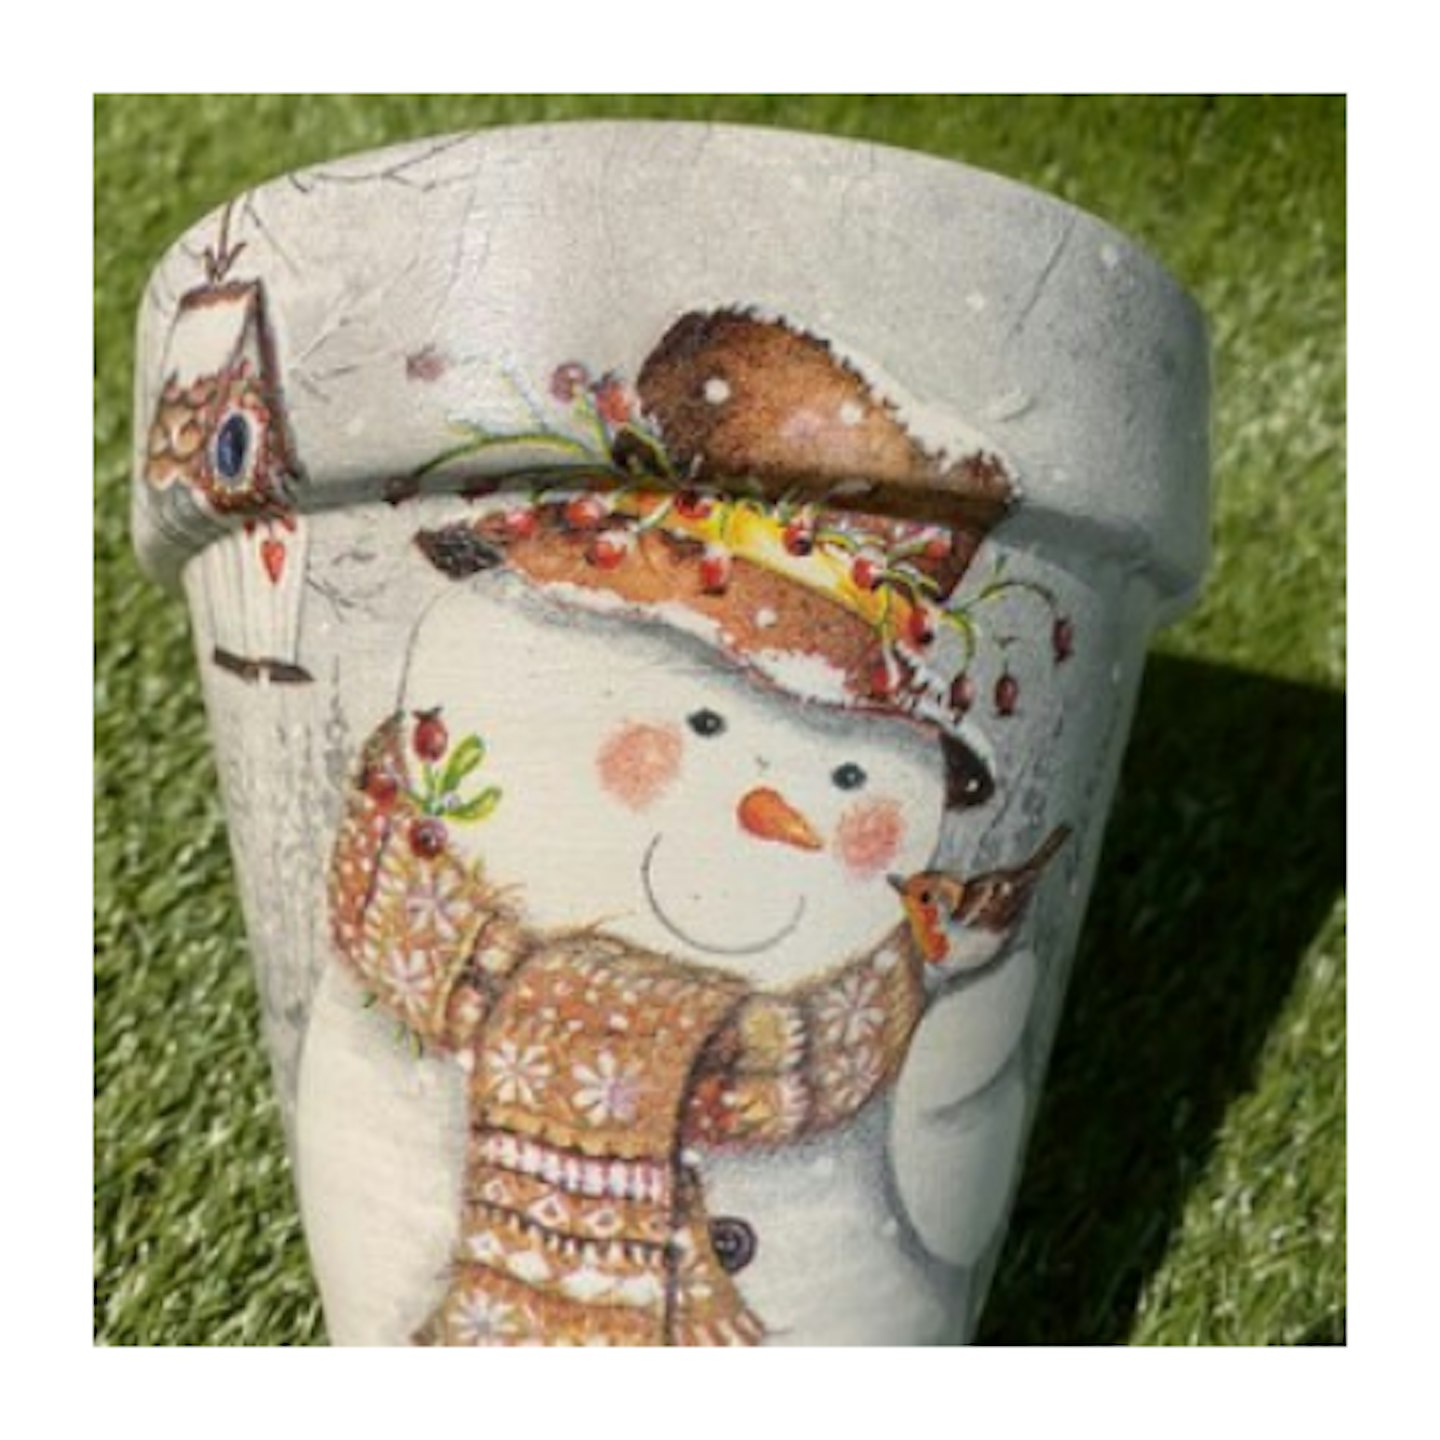 Snowman and robin plant pot, 15cm terracotta decoupaged plant pot